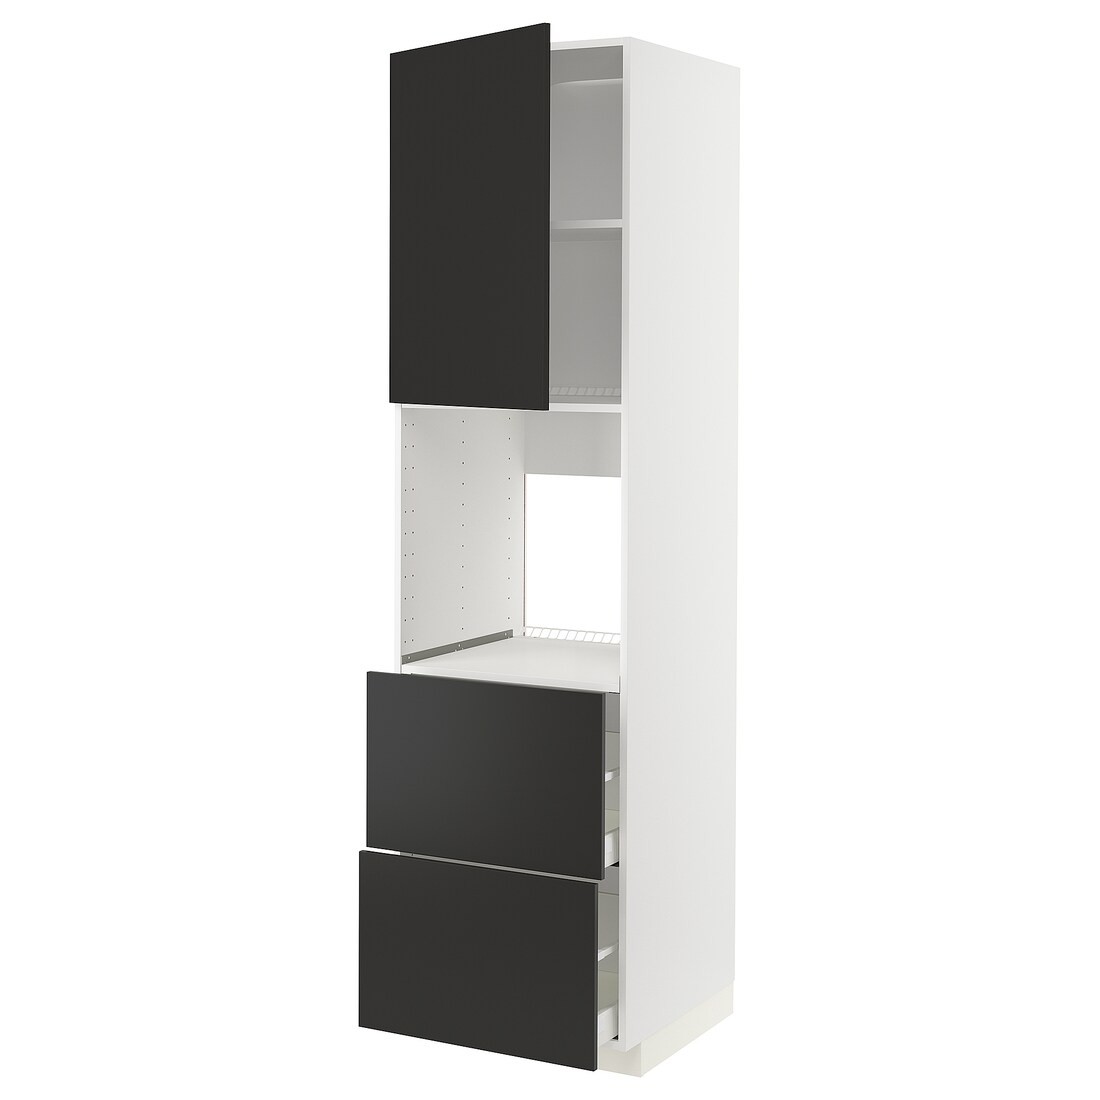 IKEA METOD МЕТОД / MAXIMERA МАКСИМЕРА Высокий шкаф для духовки с дверцей / ящиками, белый / Nickebo матовый антрацит, 60x60x220 см 19498486 | 194.984.86